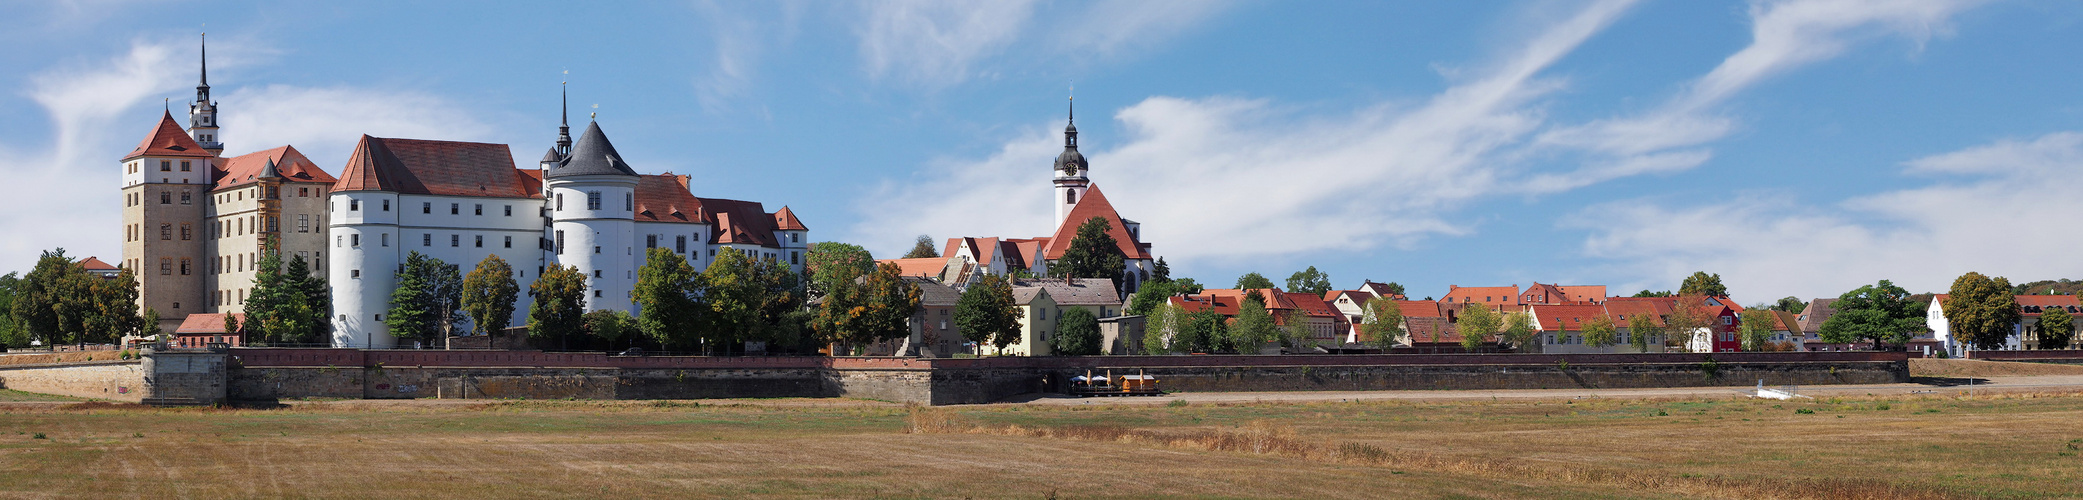 Panorama: Torgau 